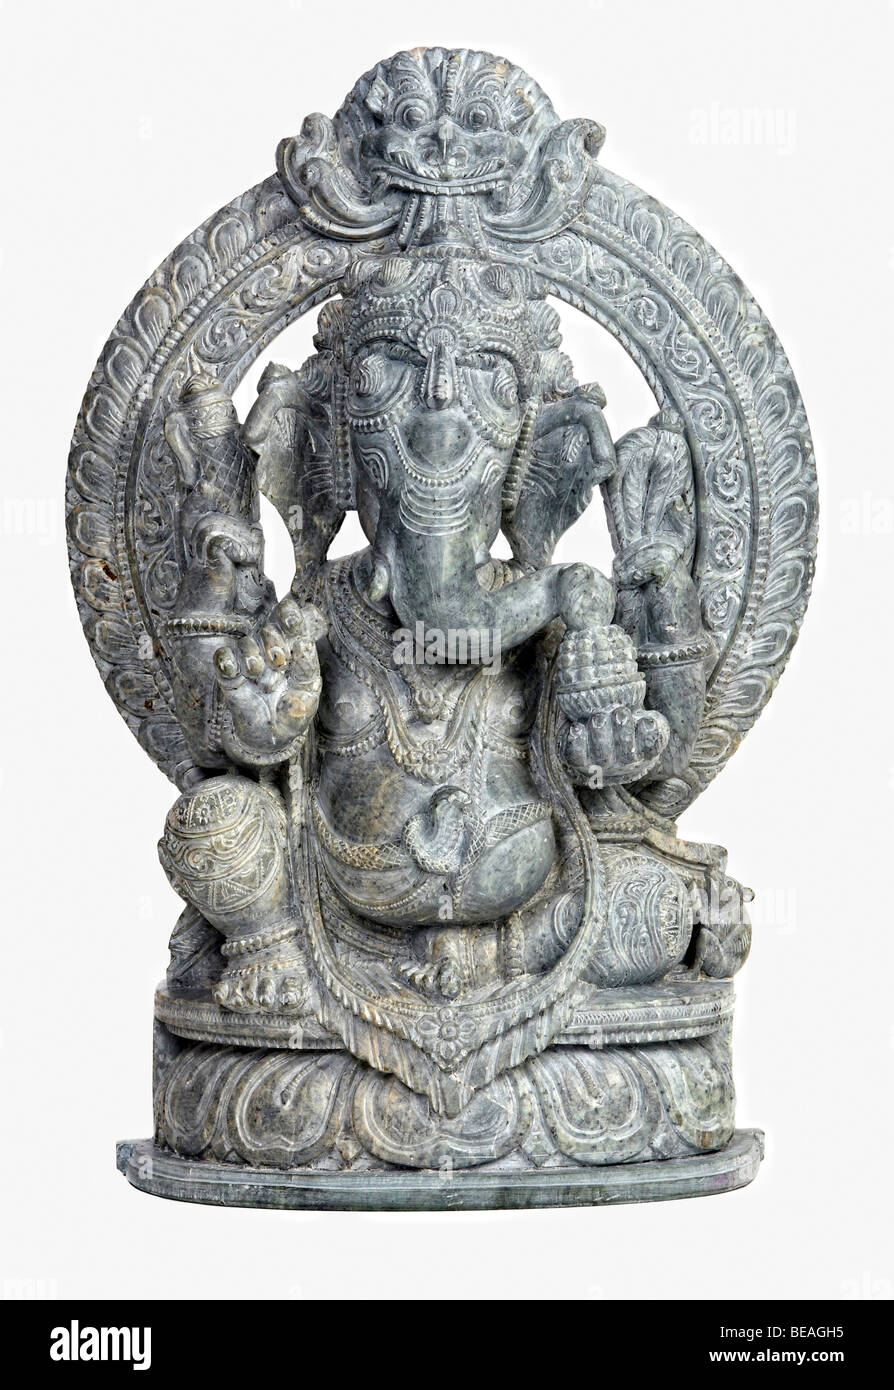 Classi di scultura in pietra del dio indiano ganesh su bianco Foto Stock